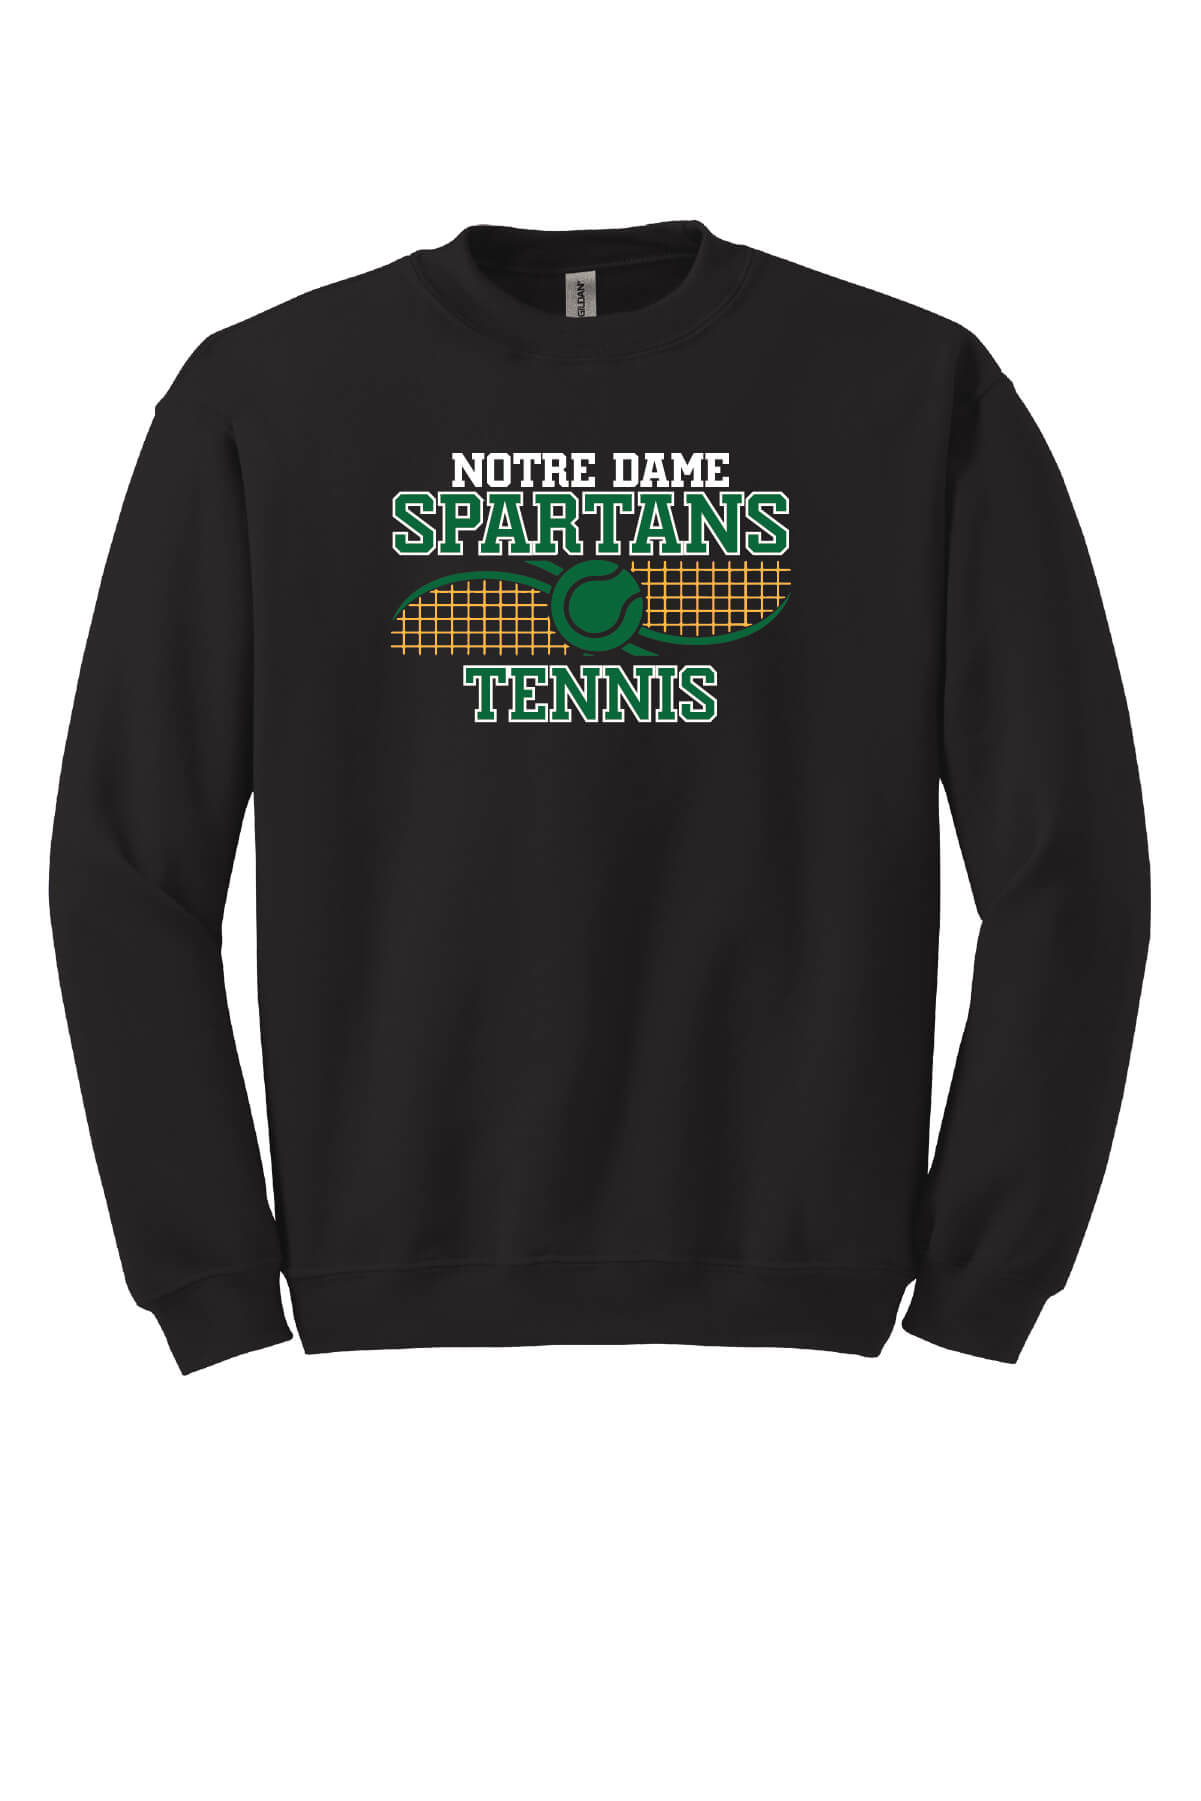 Notre Dame Spartans Crewneck Sweatshirt black